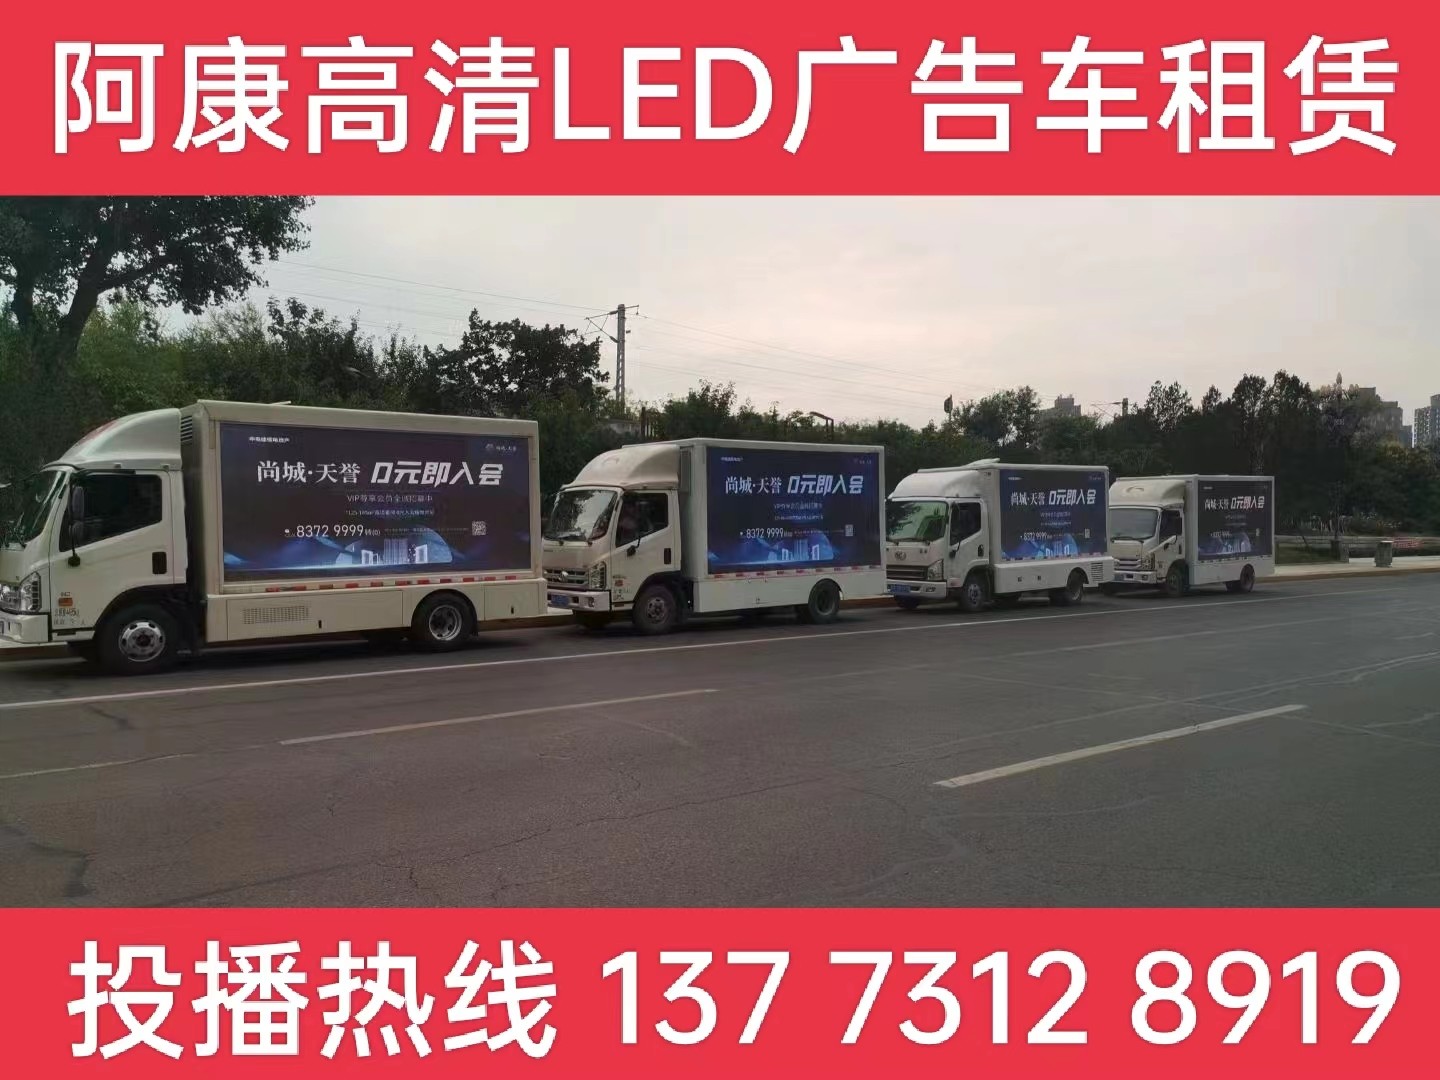 靖江LED广告车出租公司